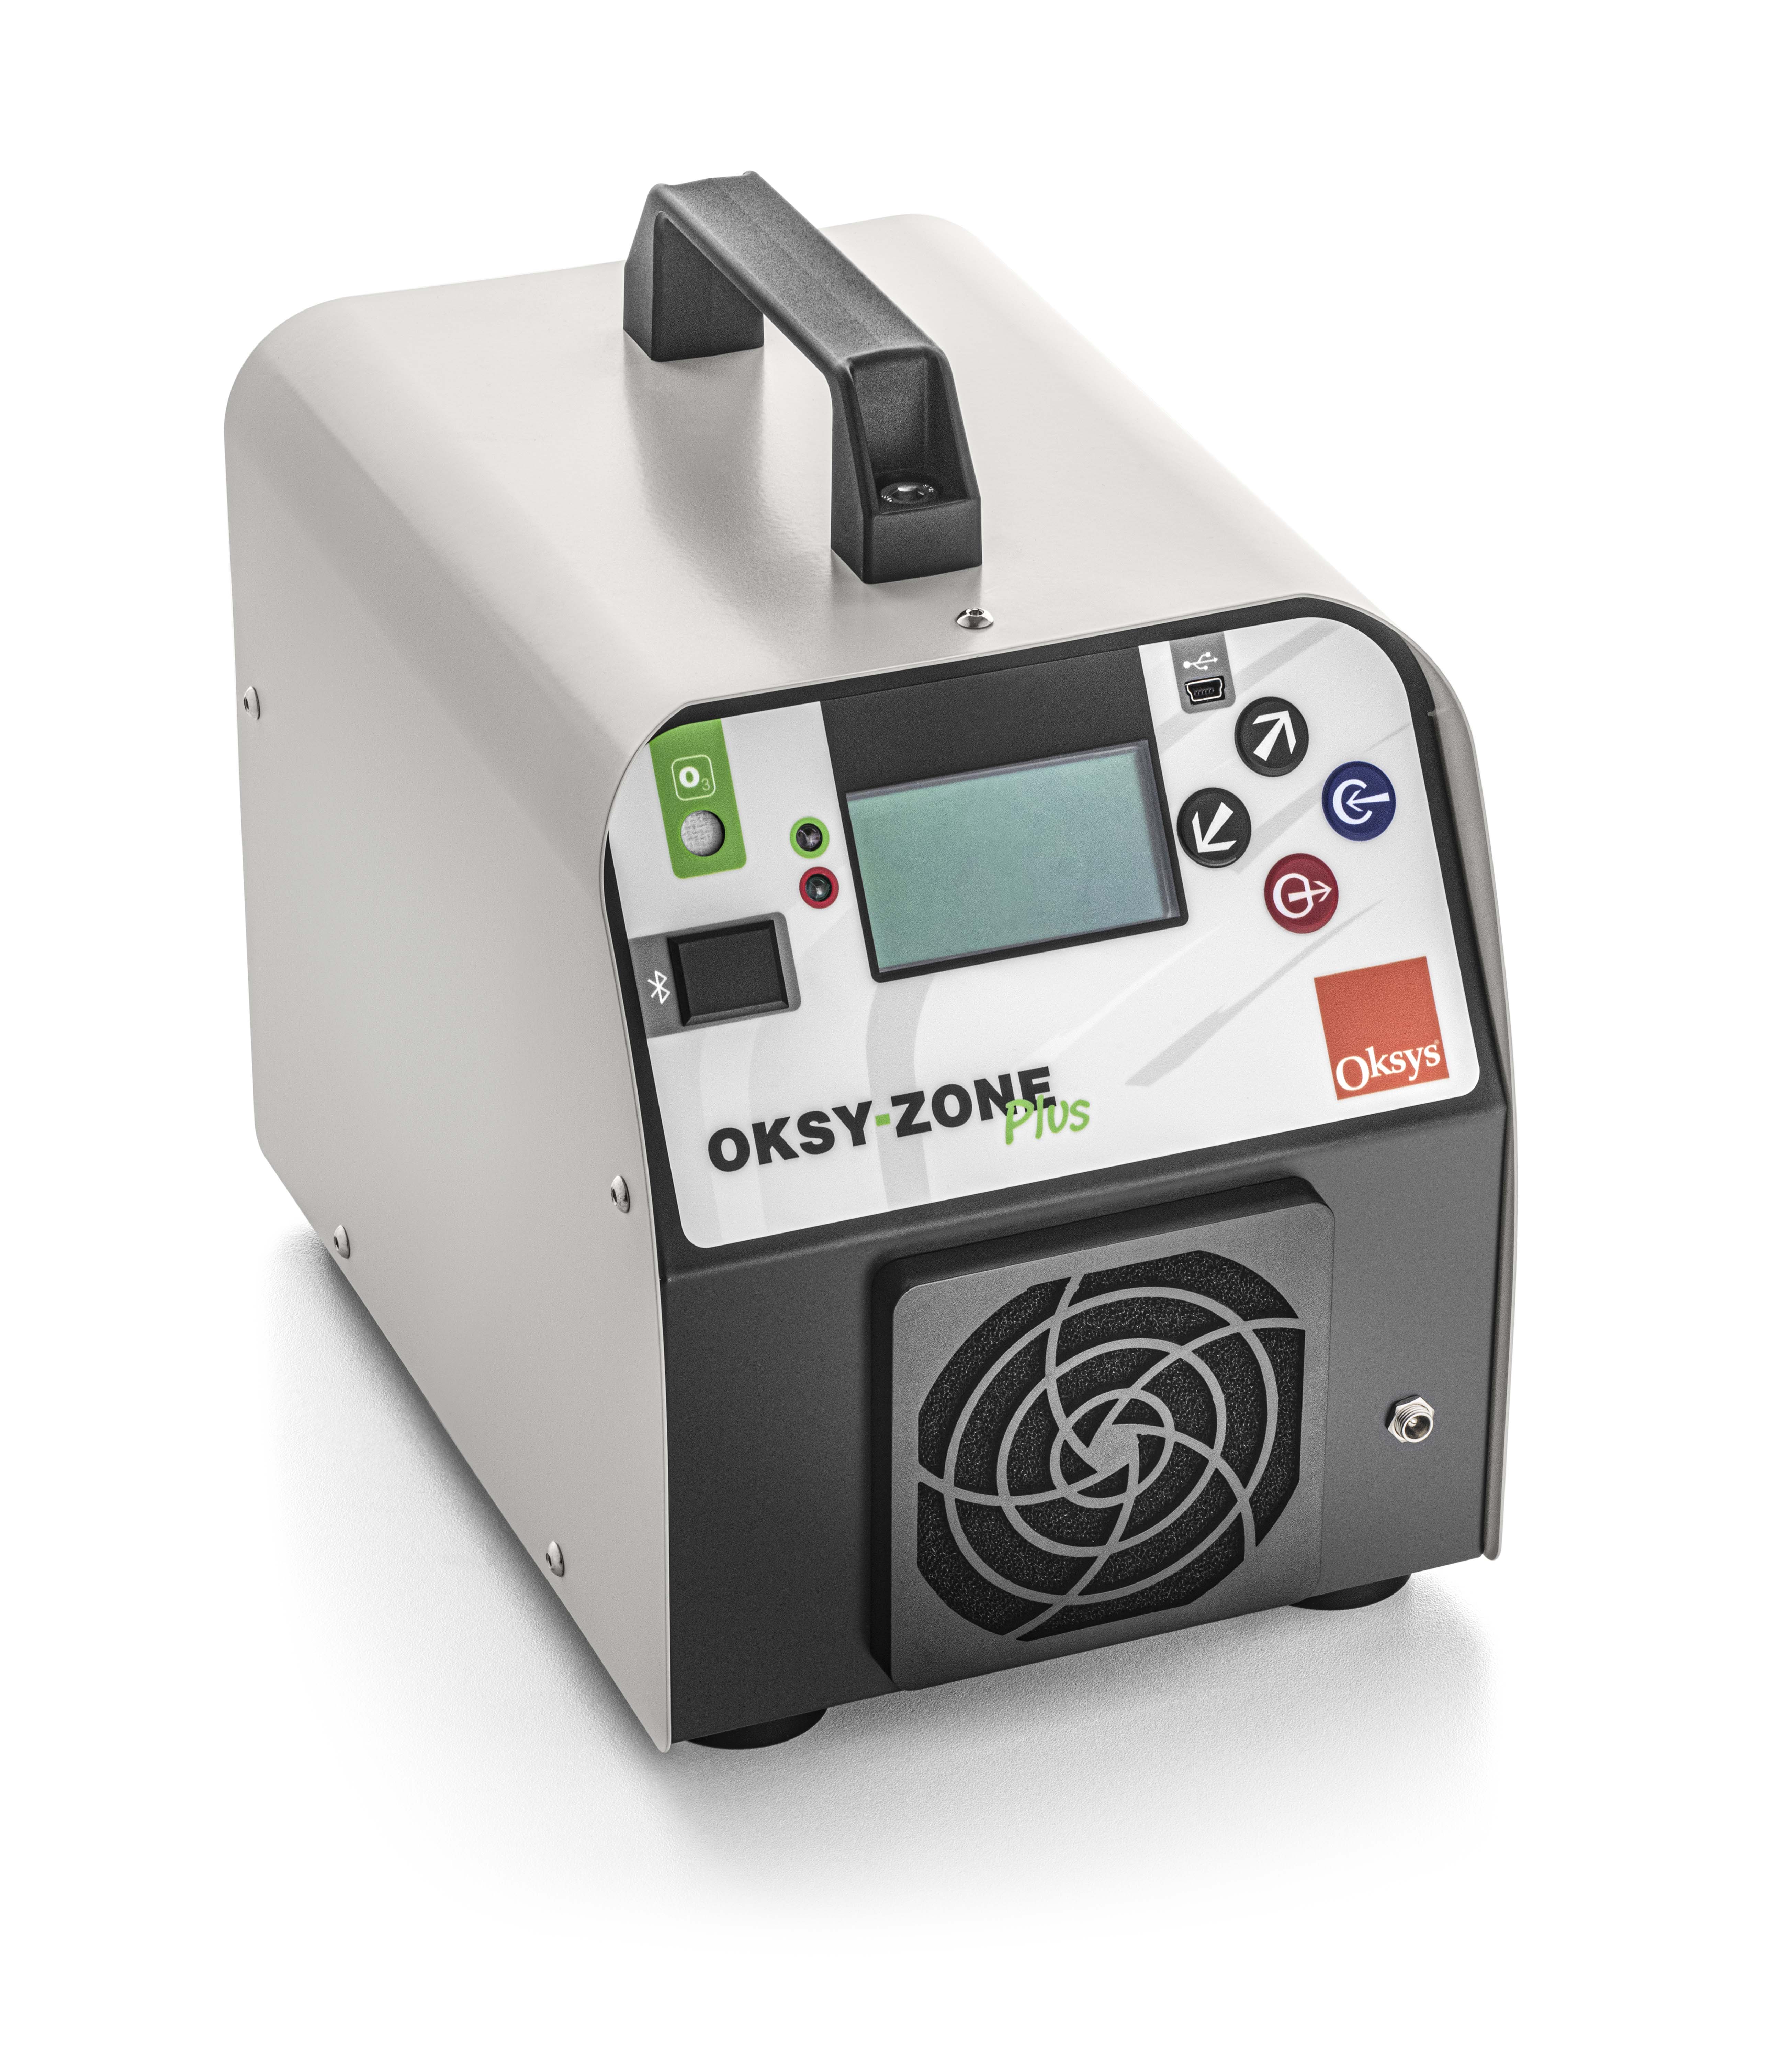 Générateur d'ozone portatif, facile à utiliser - oksy-zone plus_0